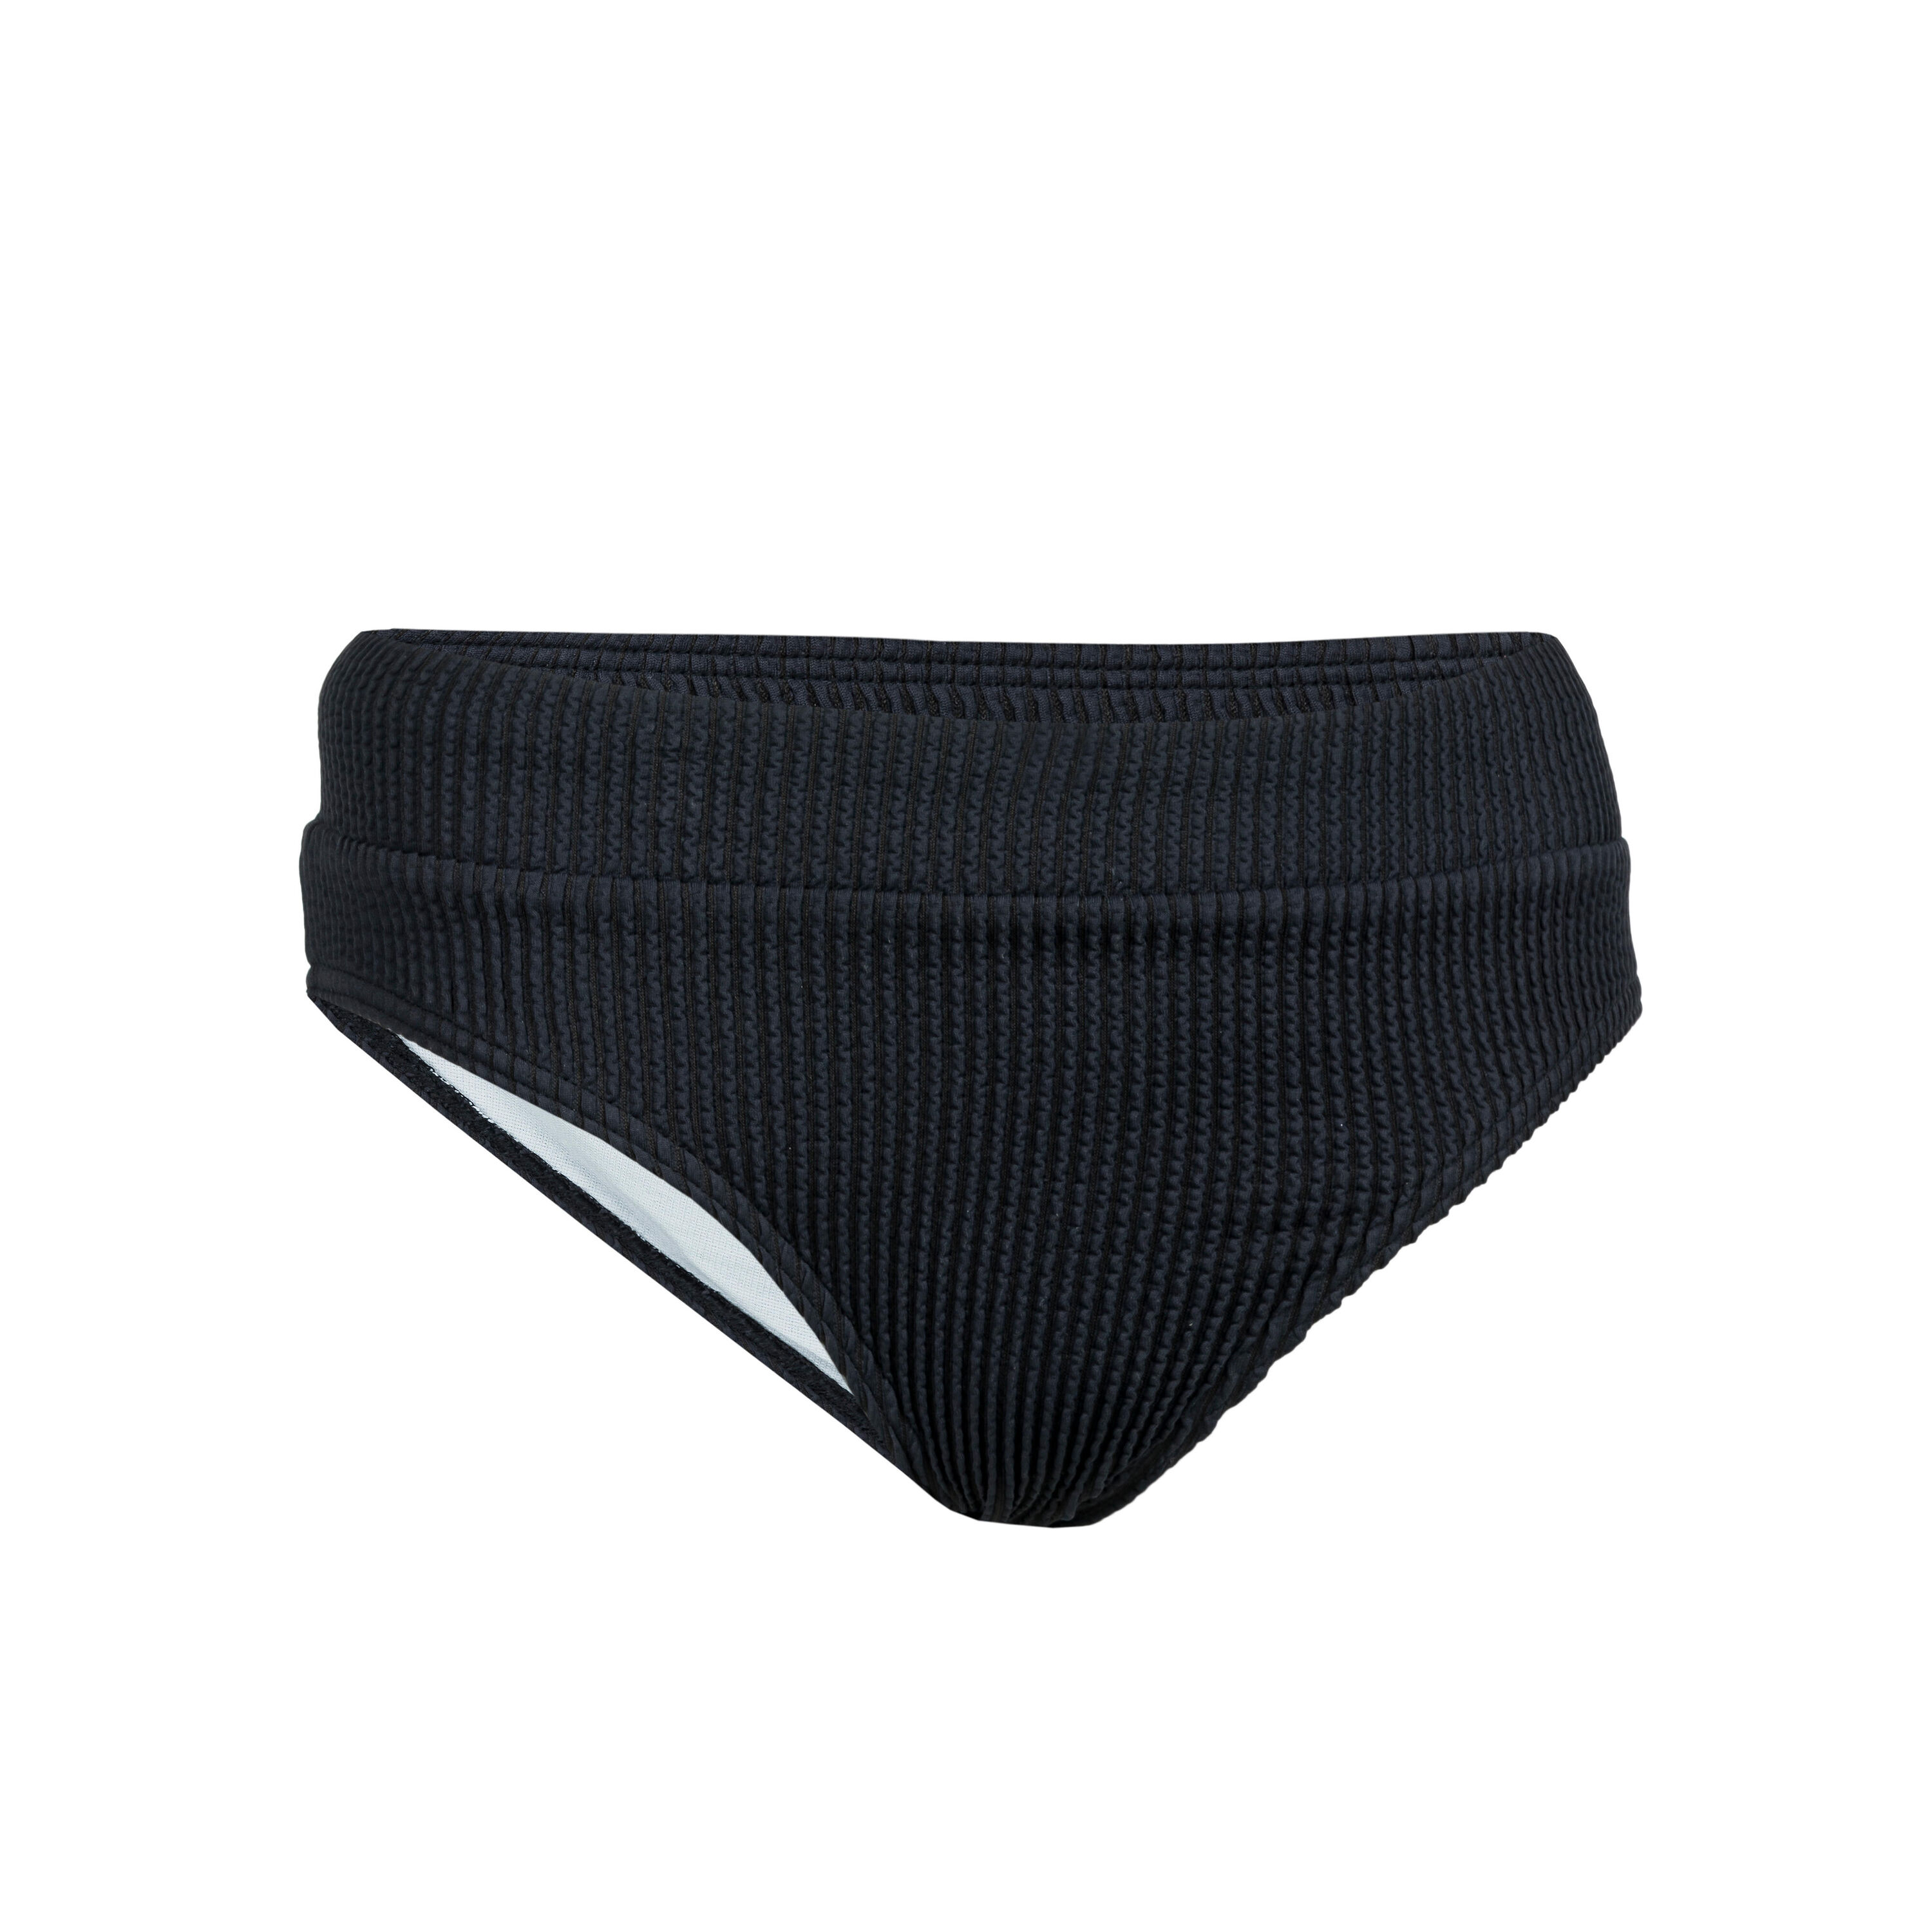 OLAIAN Girl's textured swimsuit bottom - 500 bao black